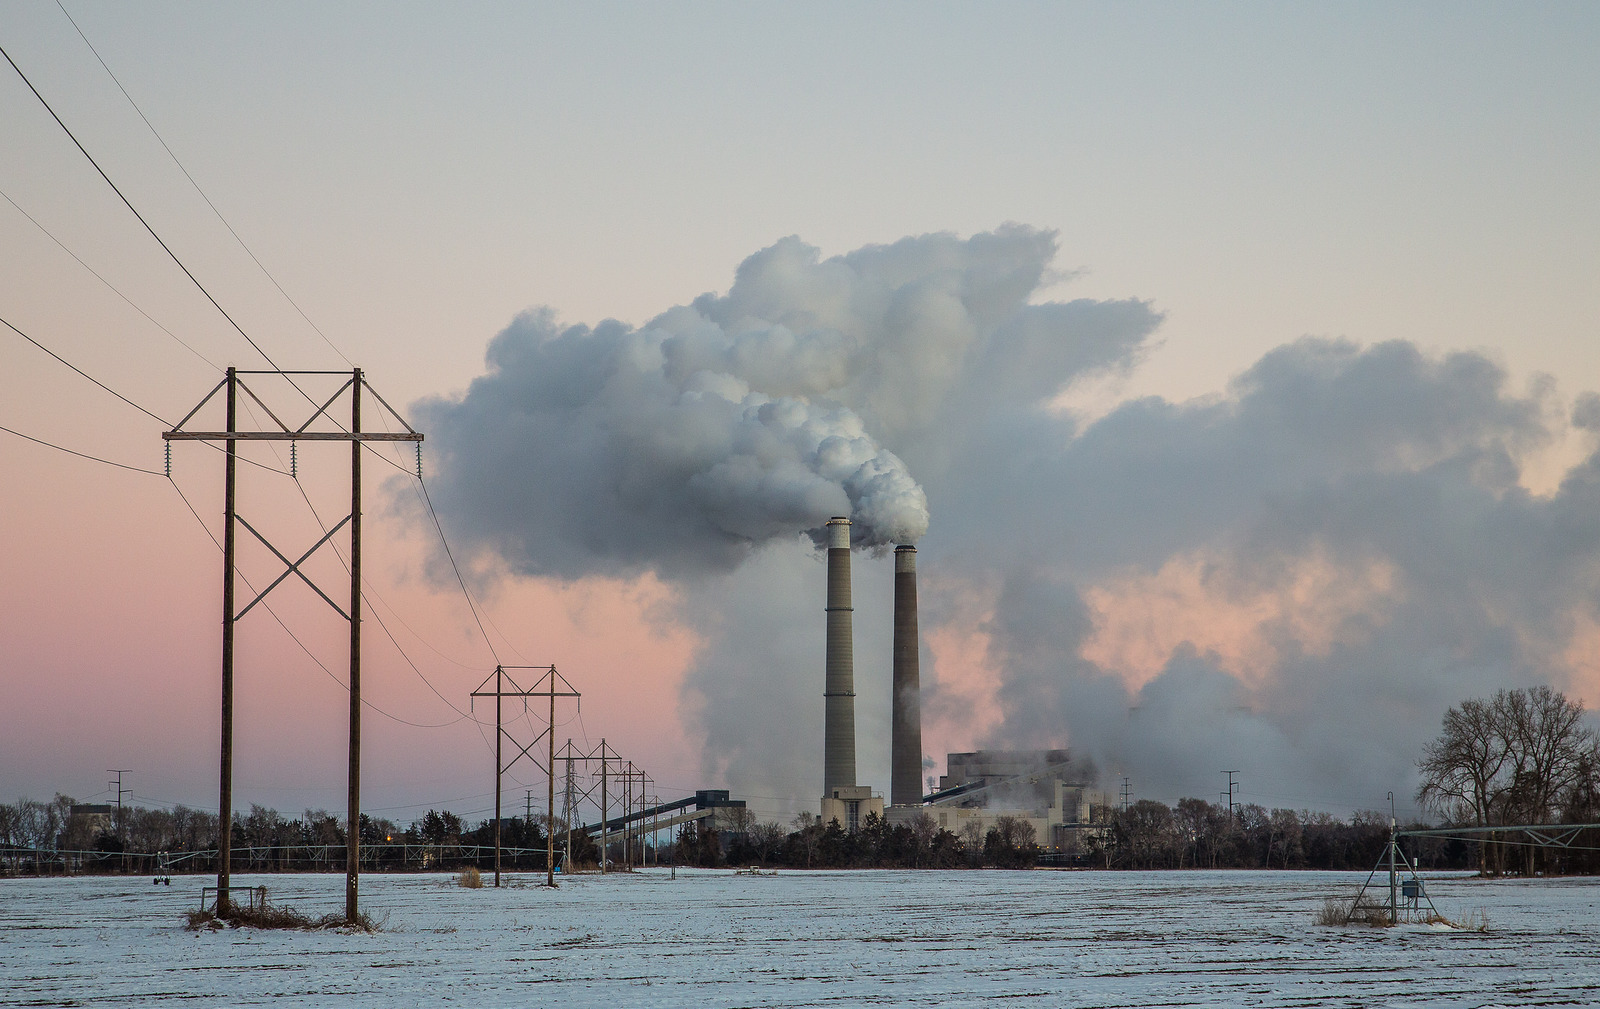 La imagen muestra la Estación Generadora del Condado de Sherburne, también conocida como Sherco, una planta de energía a base de carbón en las orillas del río Mississippi en Becker, Minnesota. El informe sobre el cambio climático señala que el uso del carbón se debe eliminar para frenar el calentamiento global. Foto: Tony Webster on Visual hunt / CC BY-SA